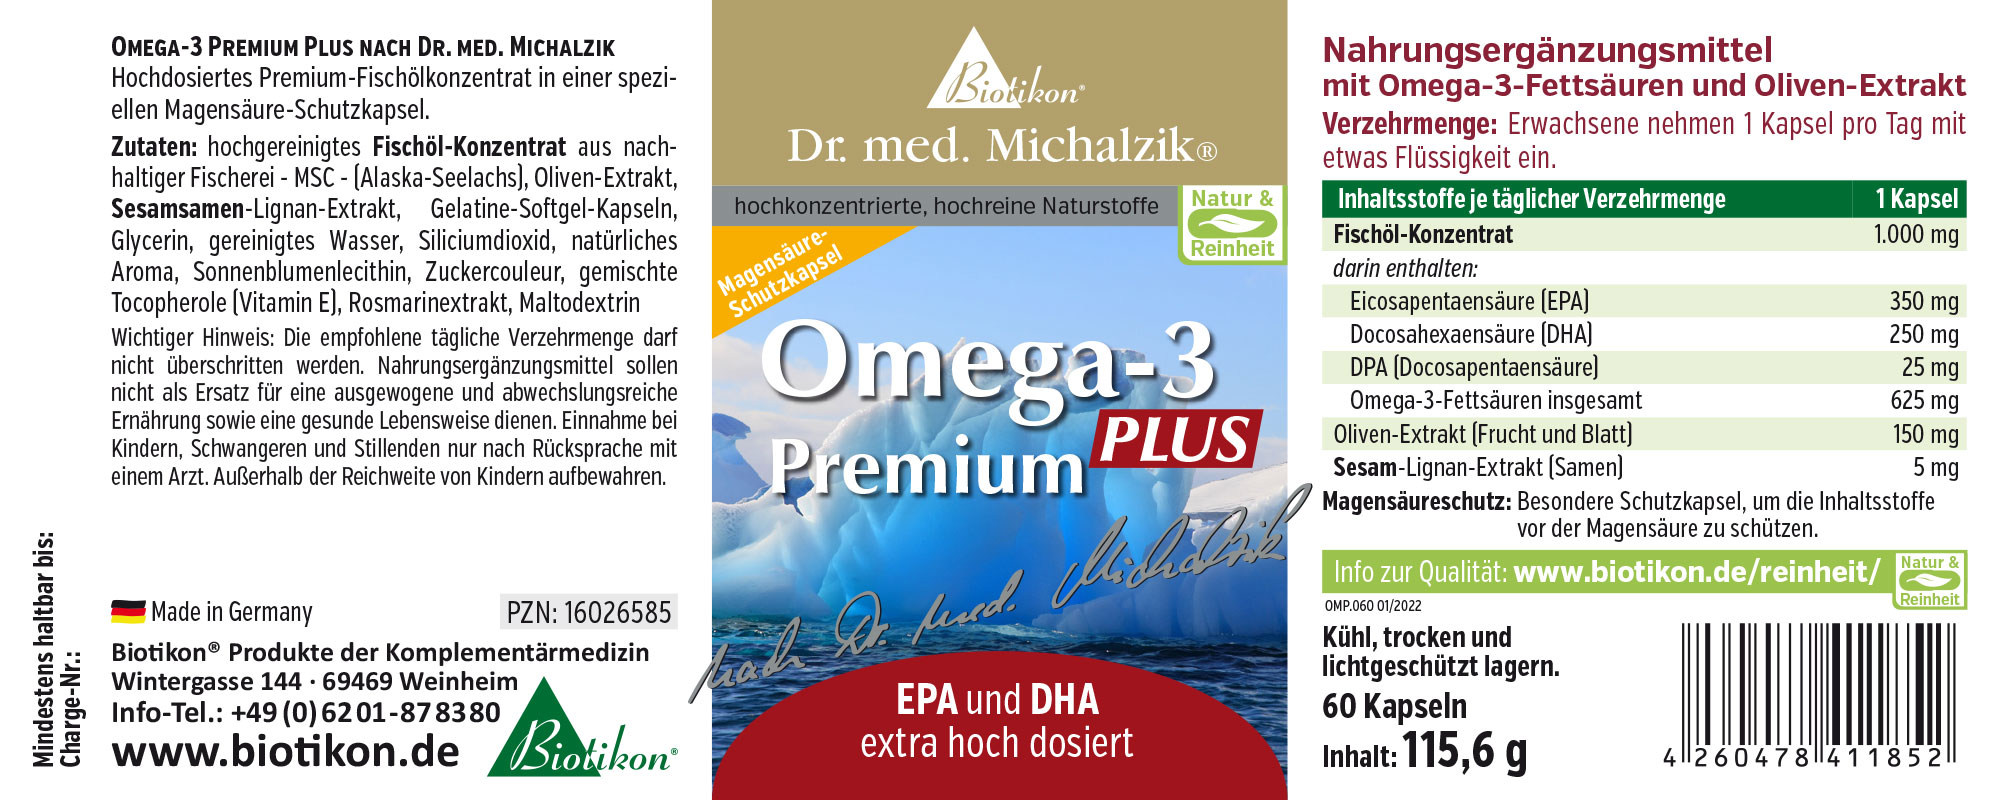 Omega III Premium PLUS